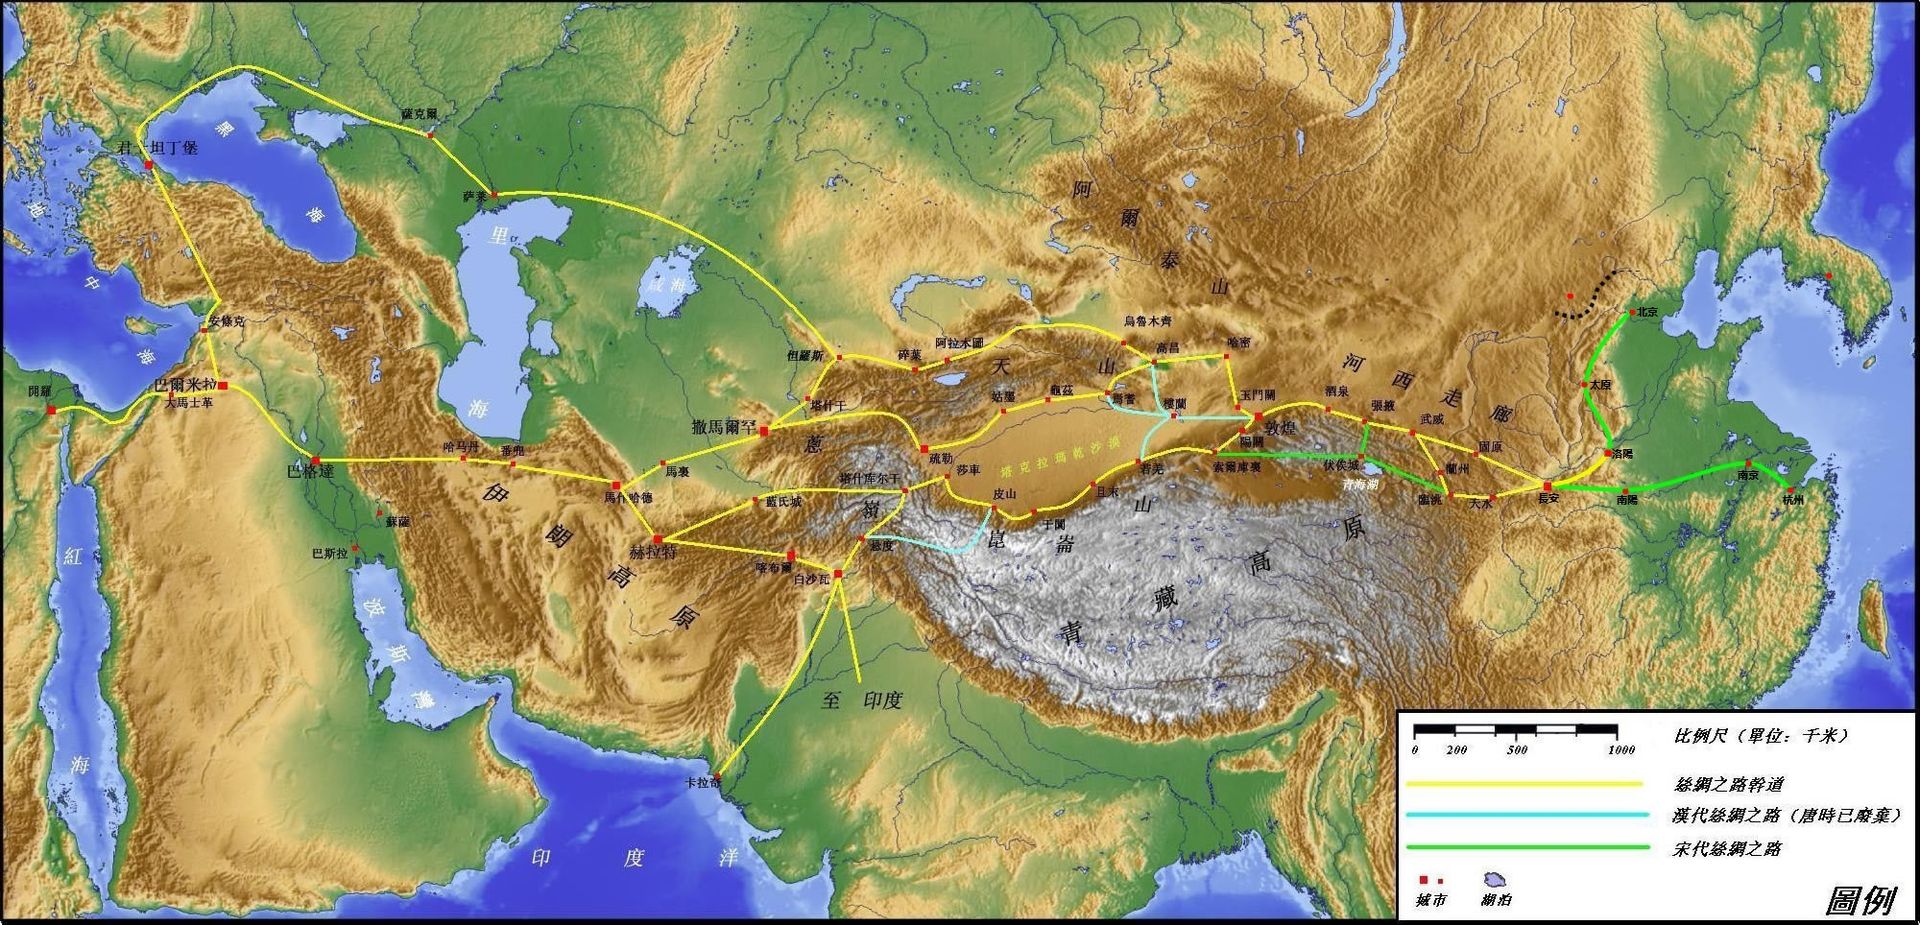 丝绸之路路线图(资料图)   比如说"一带一路"其实跟历史上的丝绸